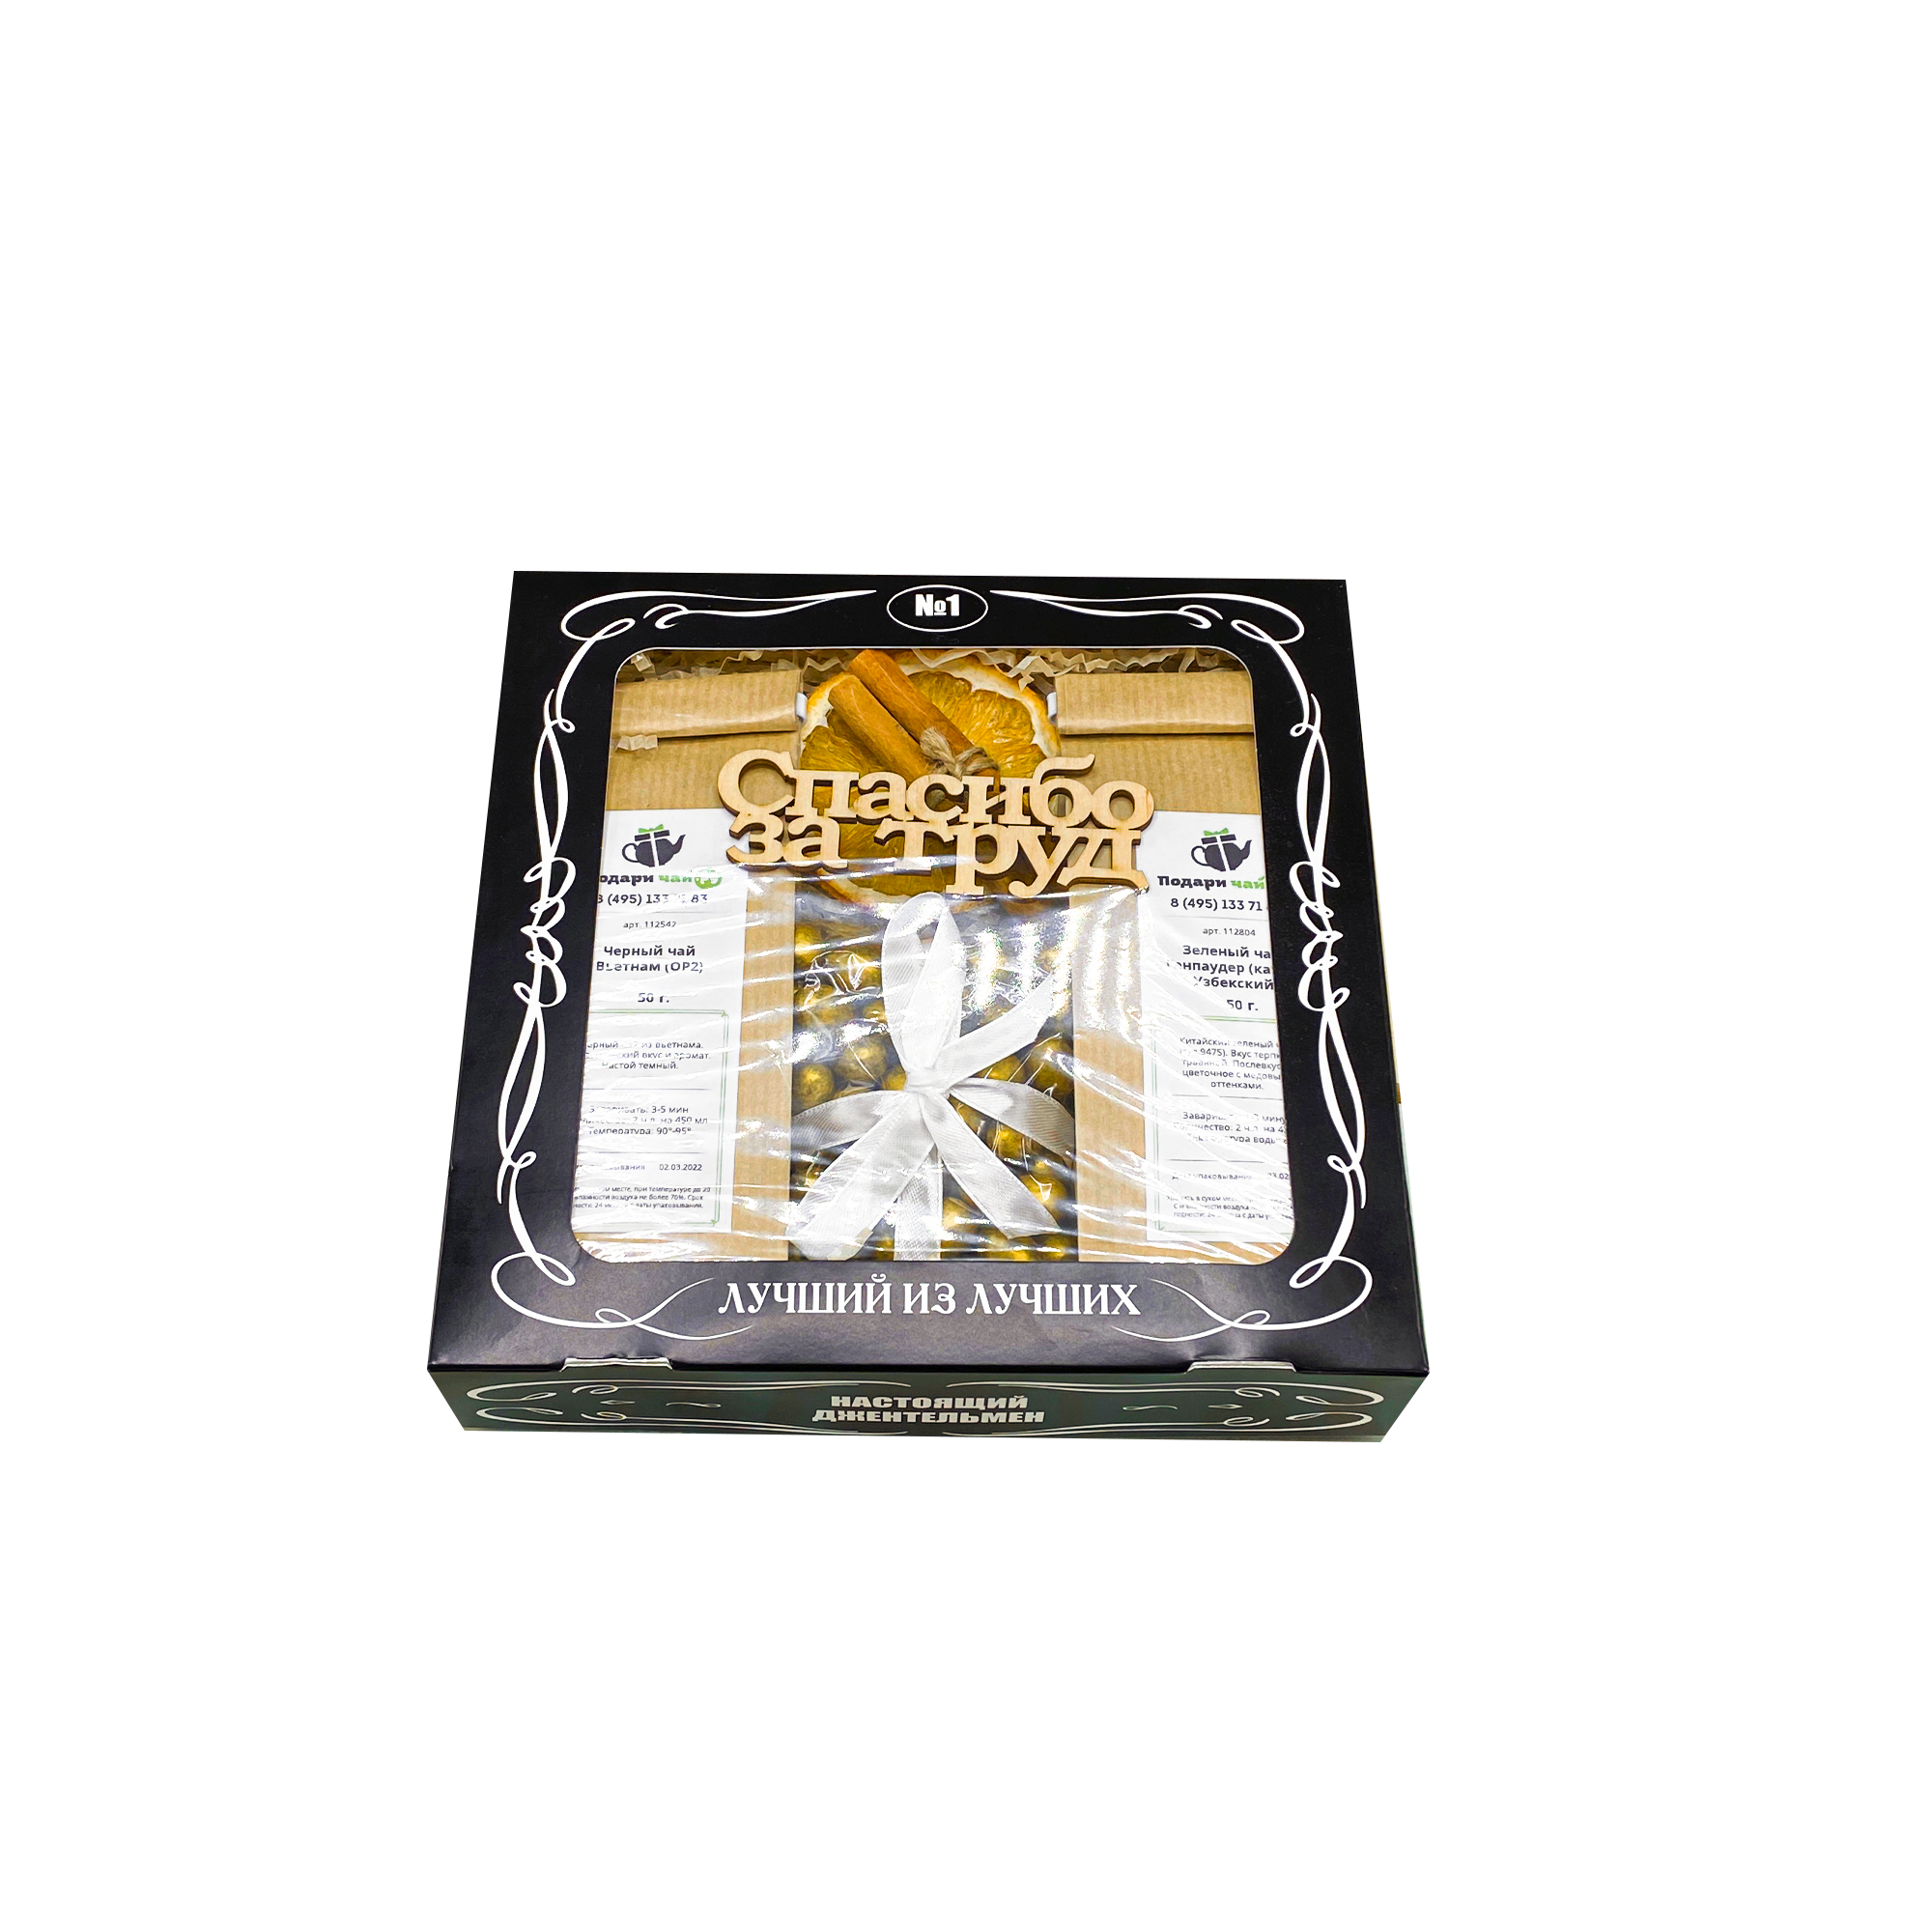 фото Подарочный набор из 2-х видов чая "золотой приз" с открыткой спасибо за труд, 250гр подари чай.ру